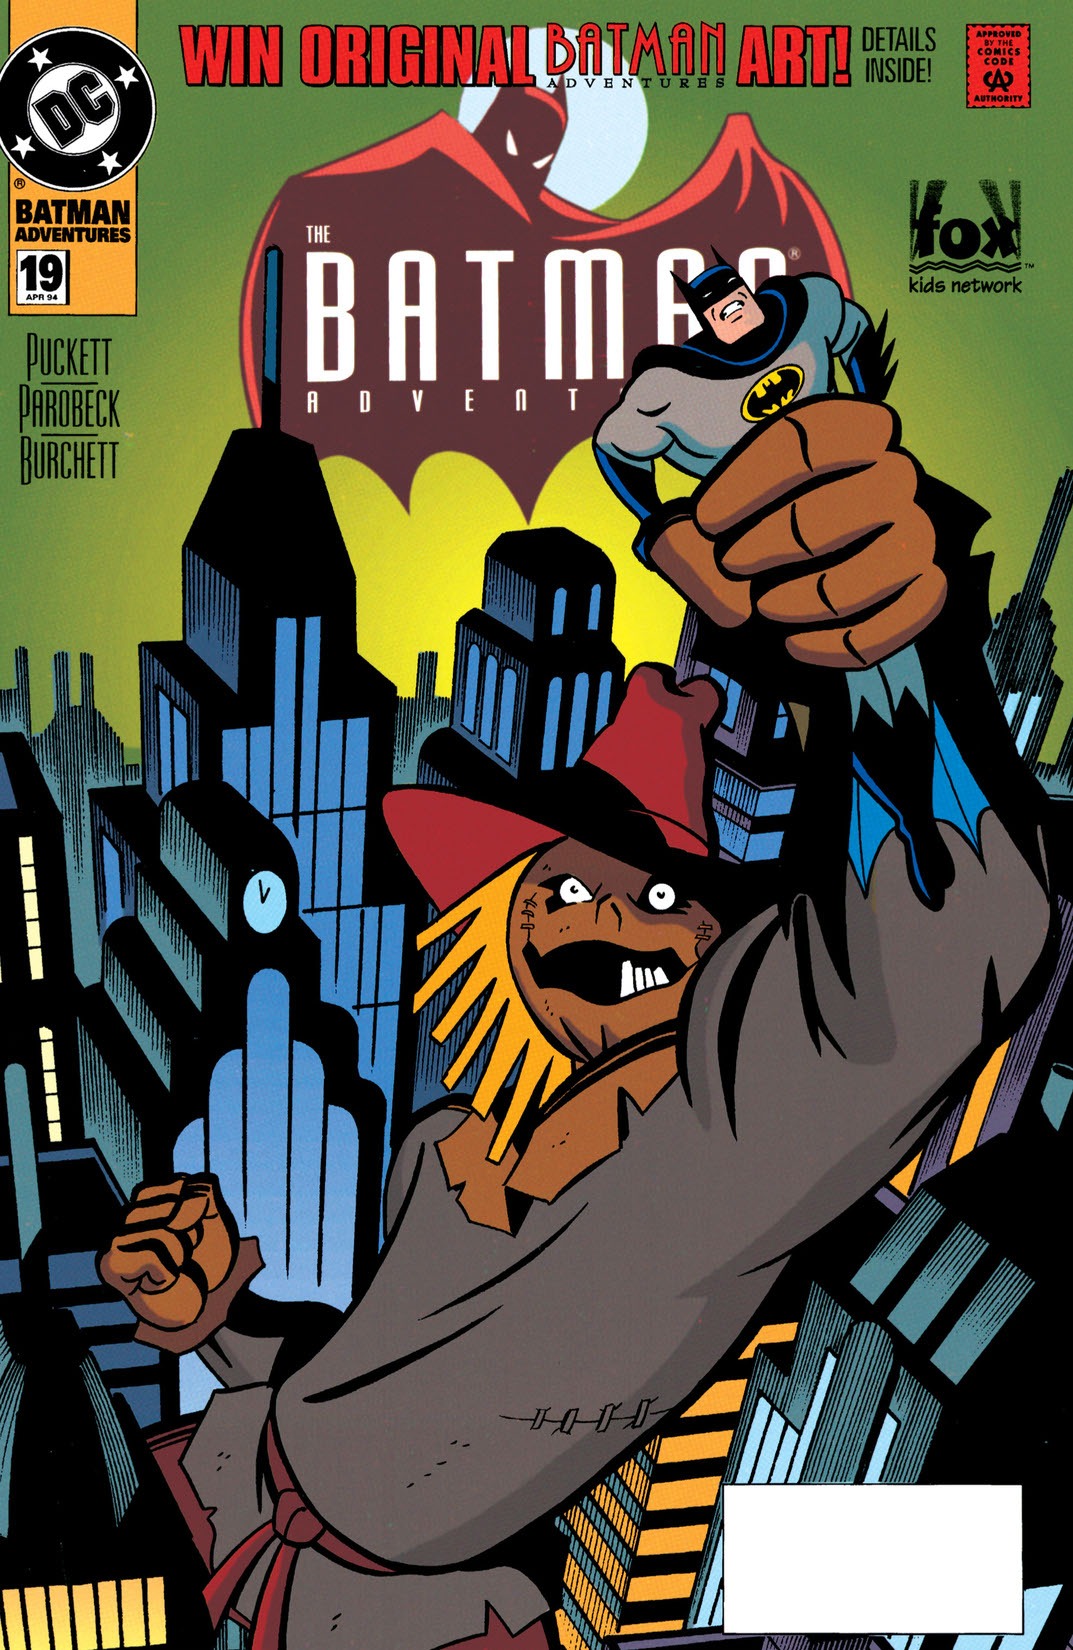 The Batman Adventures #19 preview images